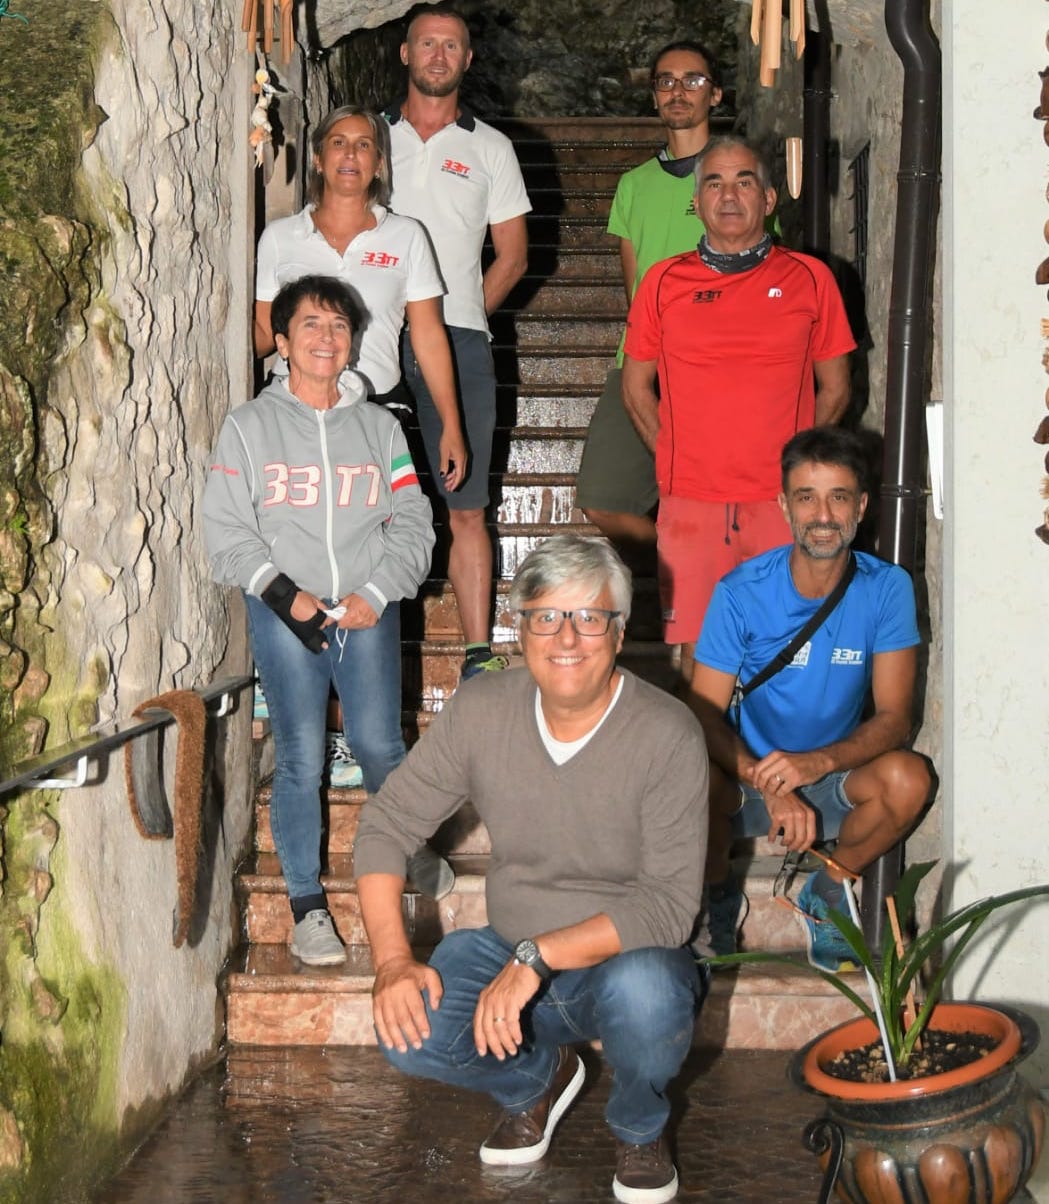 Il presidente Bianchi incontra gli amici della 33 Trentini Triathlon